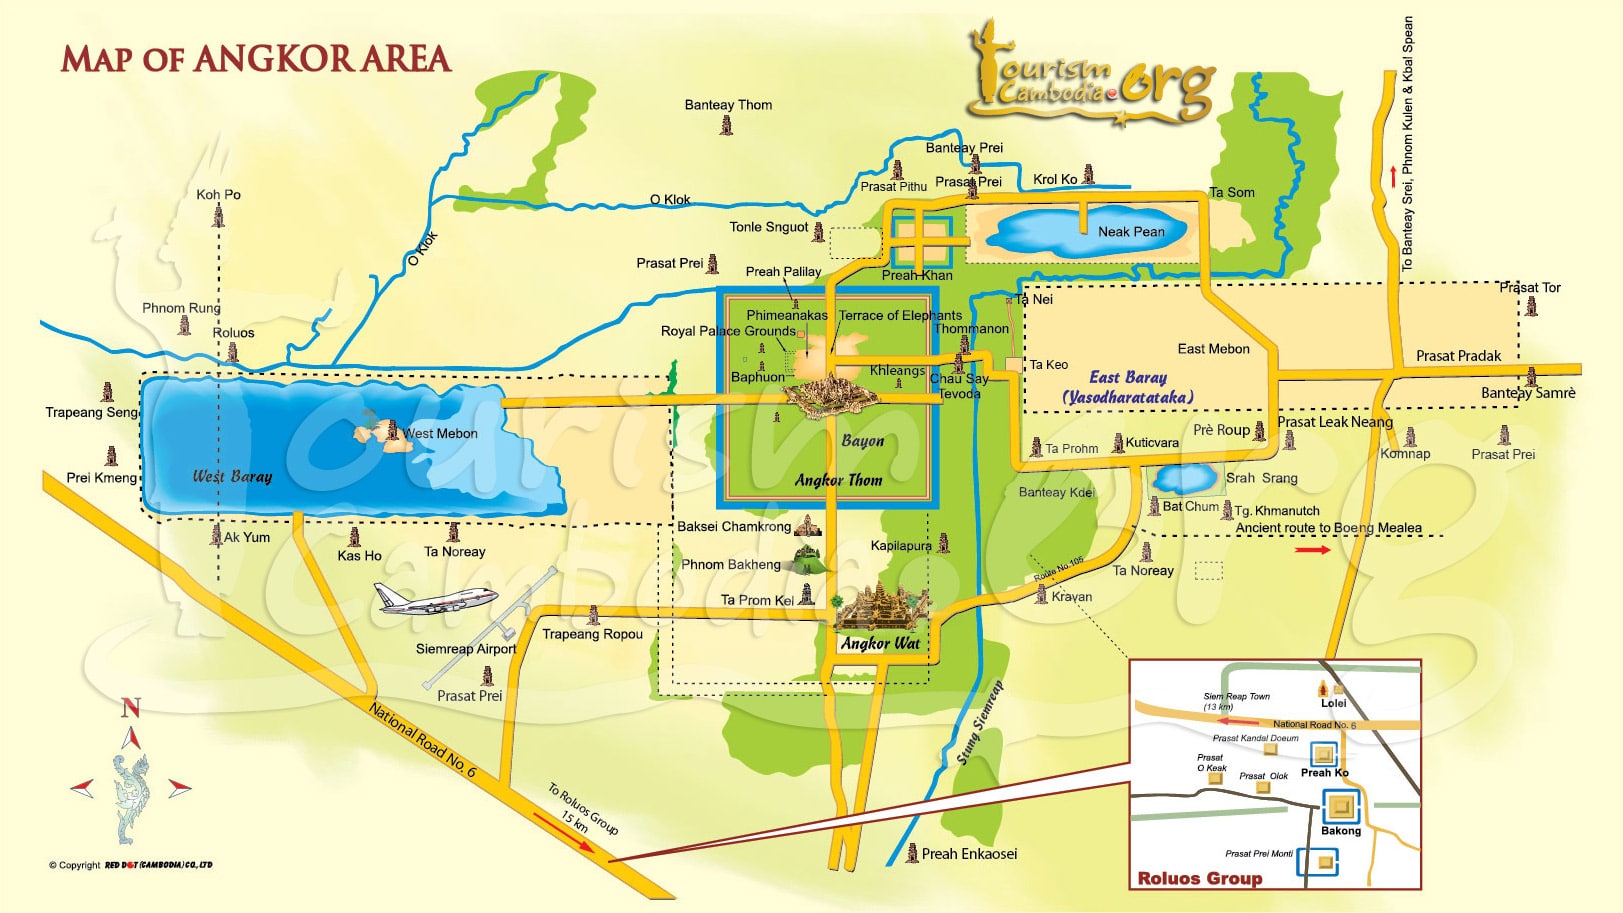 Mapa de Angkor Wat y el complejo arqueológico de Angkor - Haz clic para ampliar